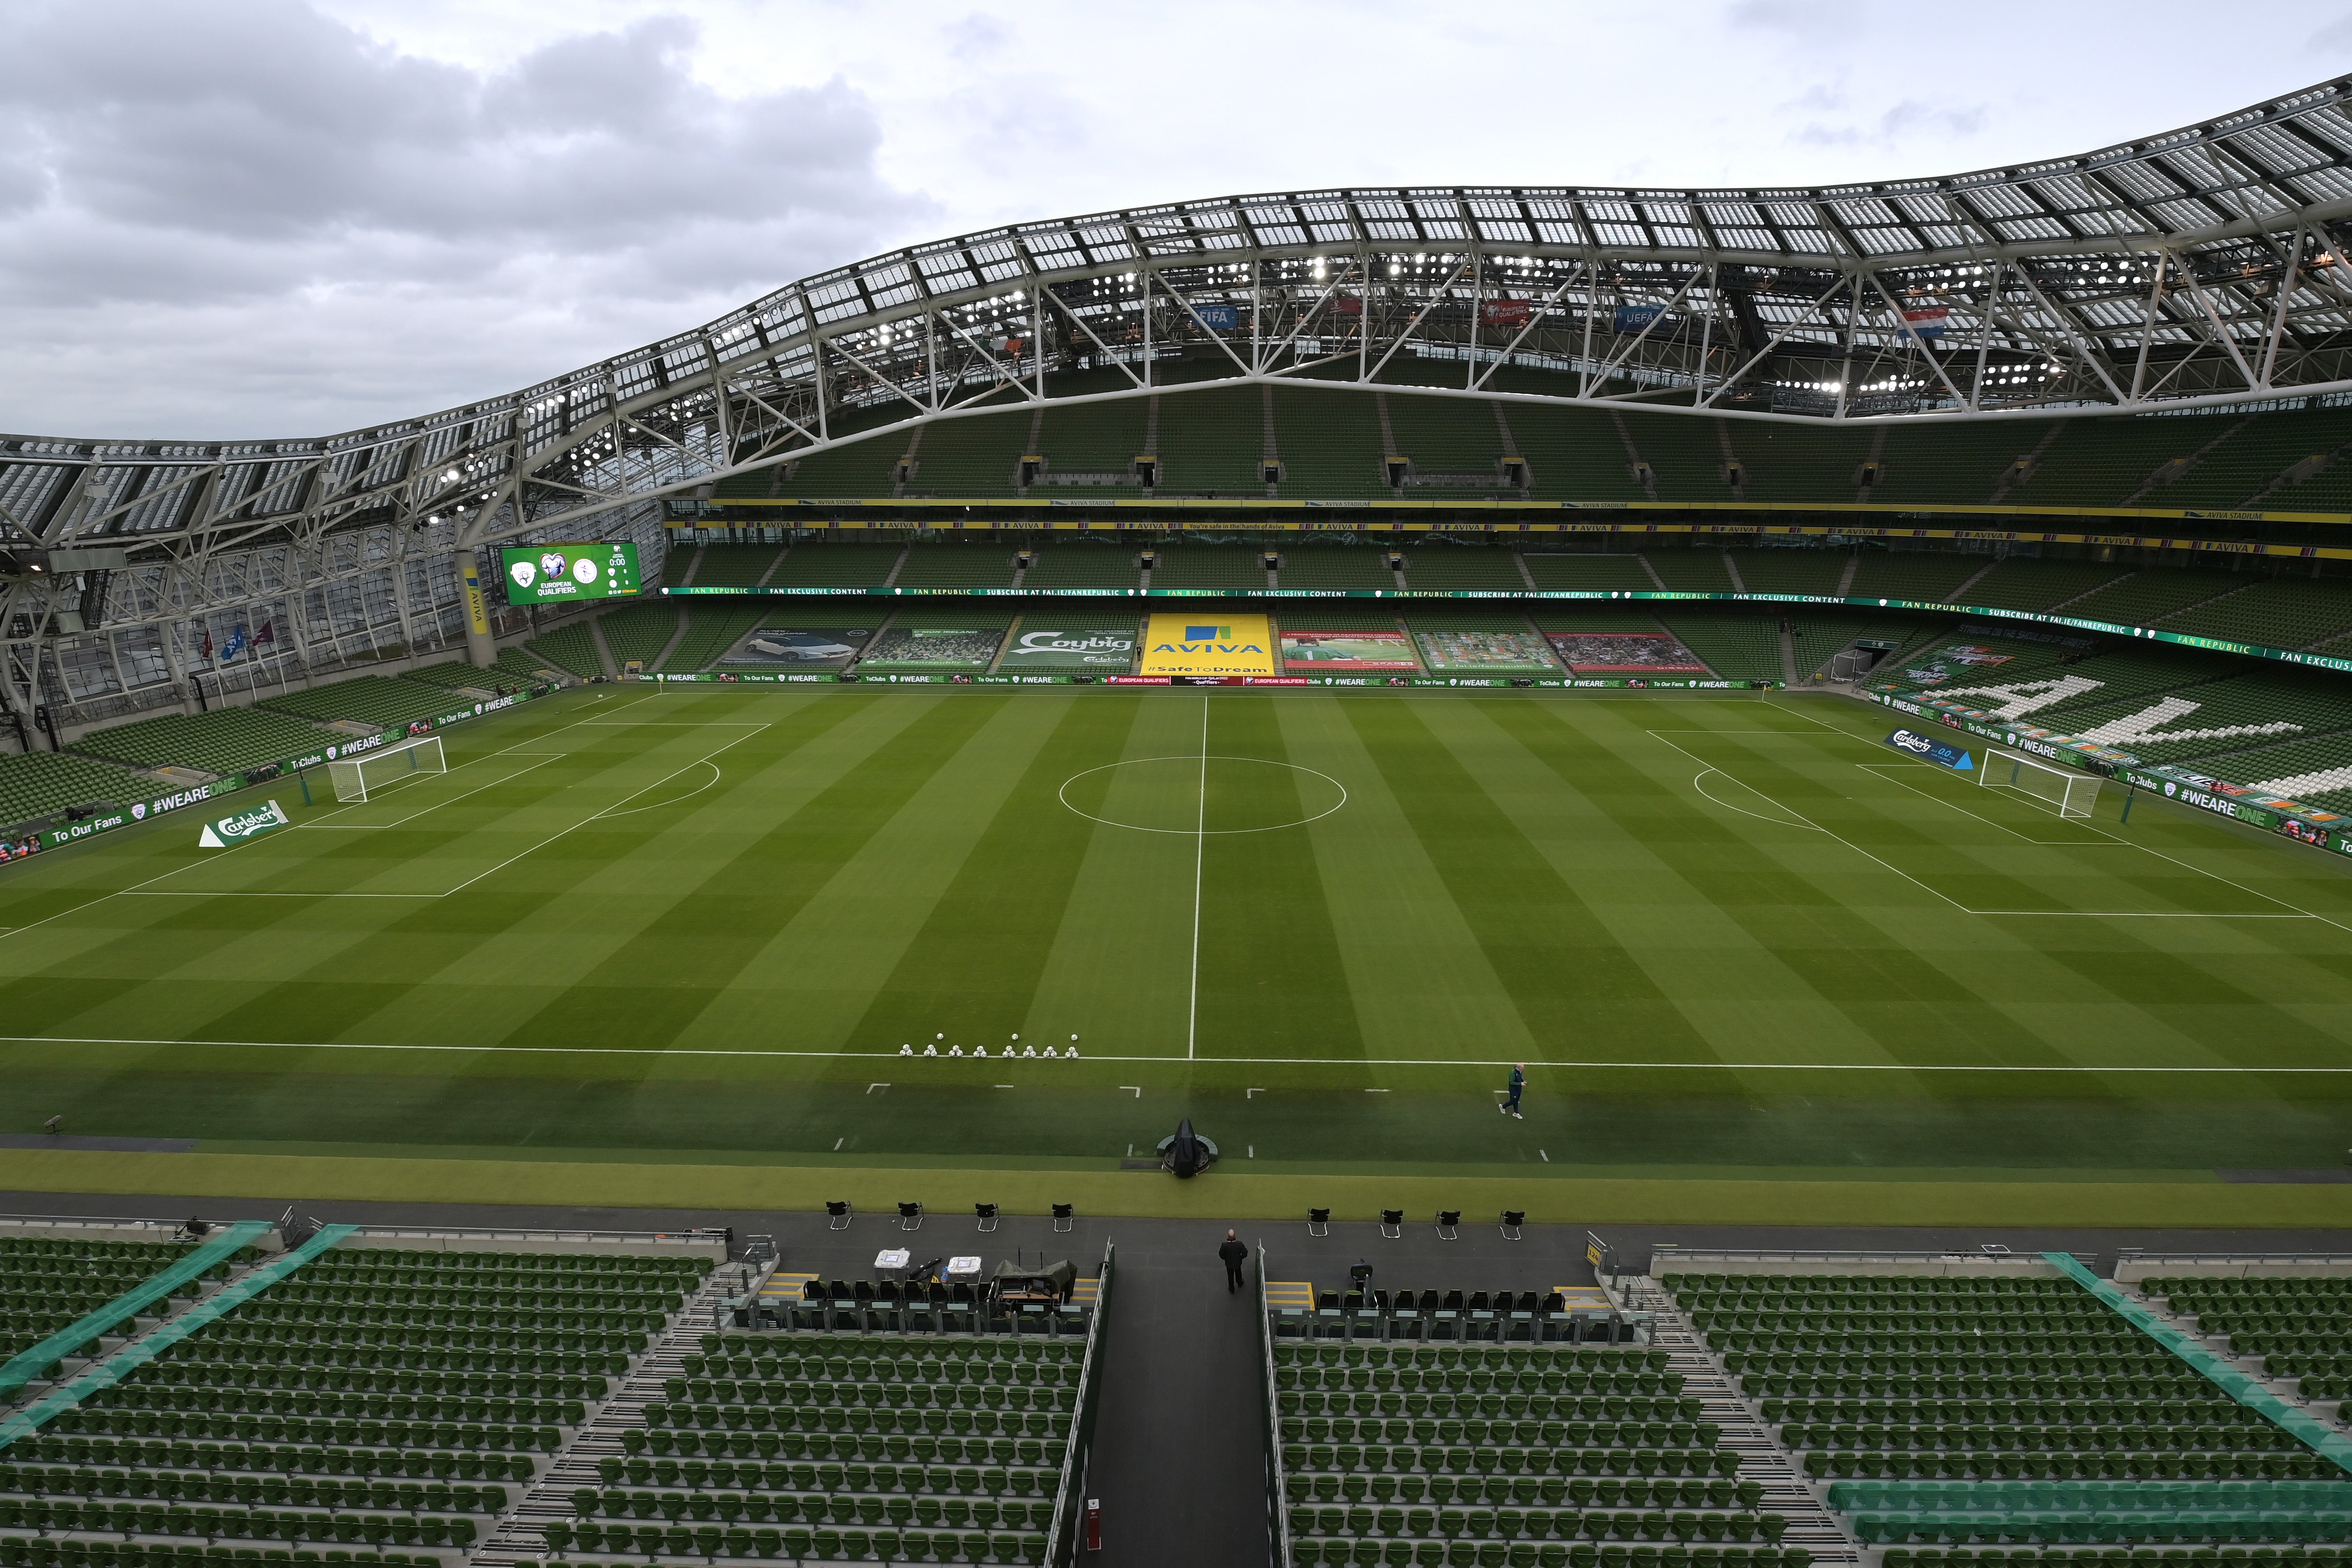 The Aviva Stadium in Dublin